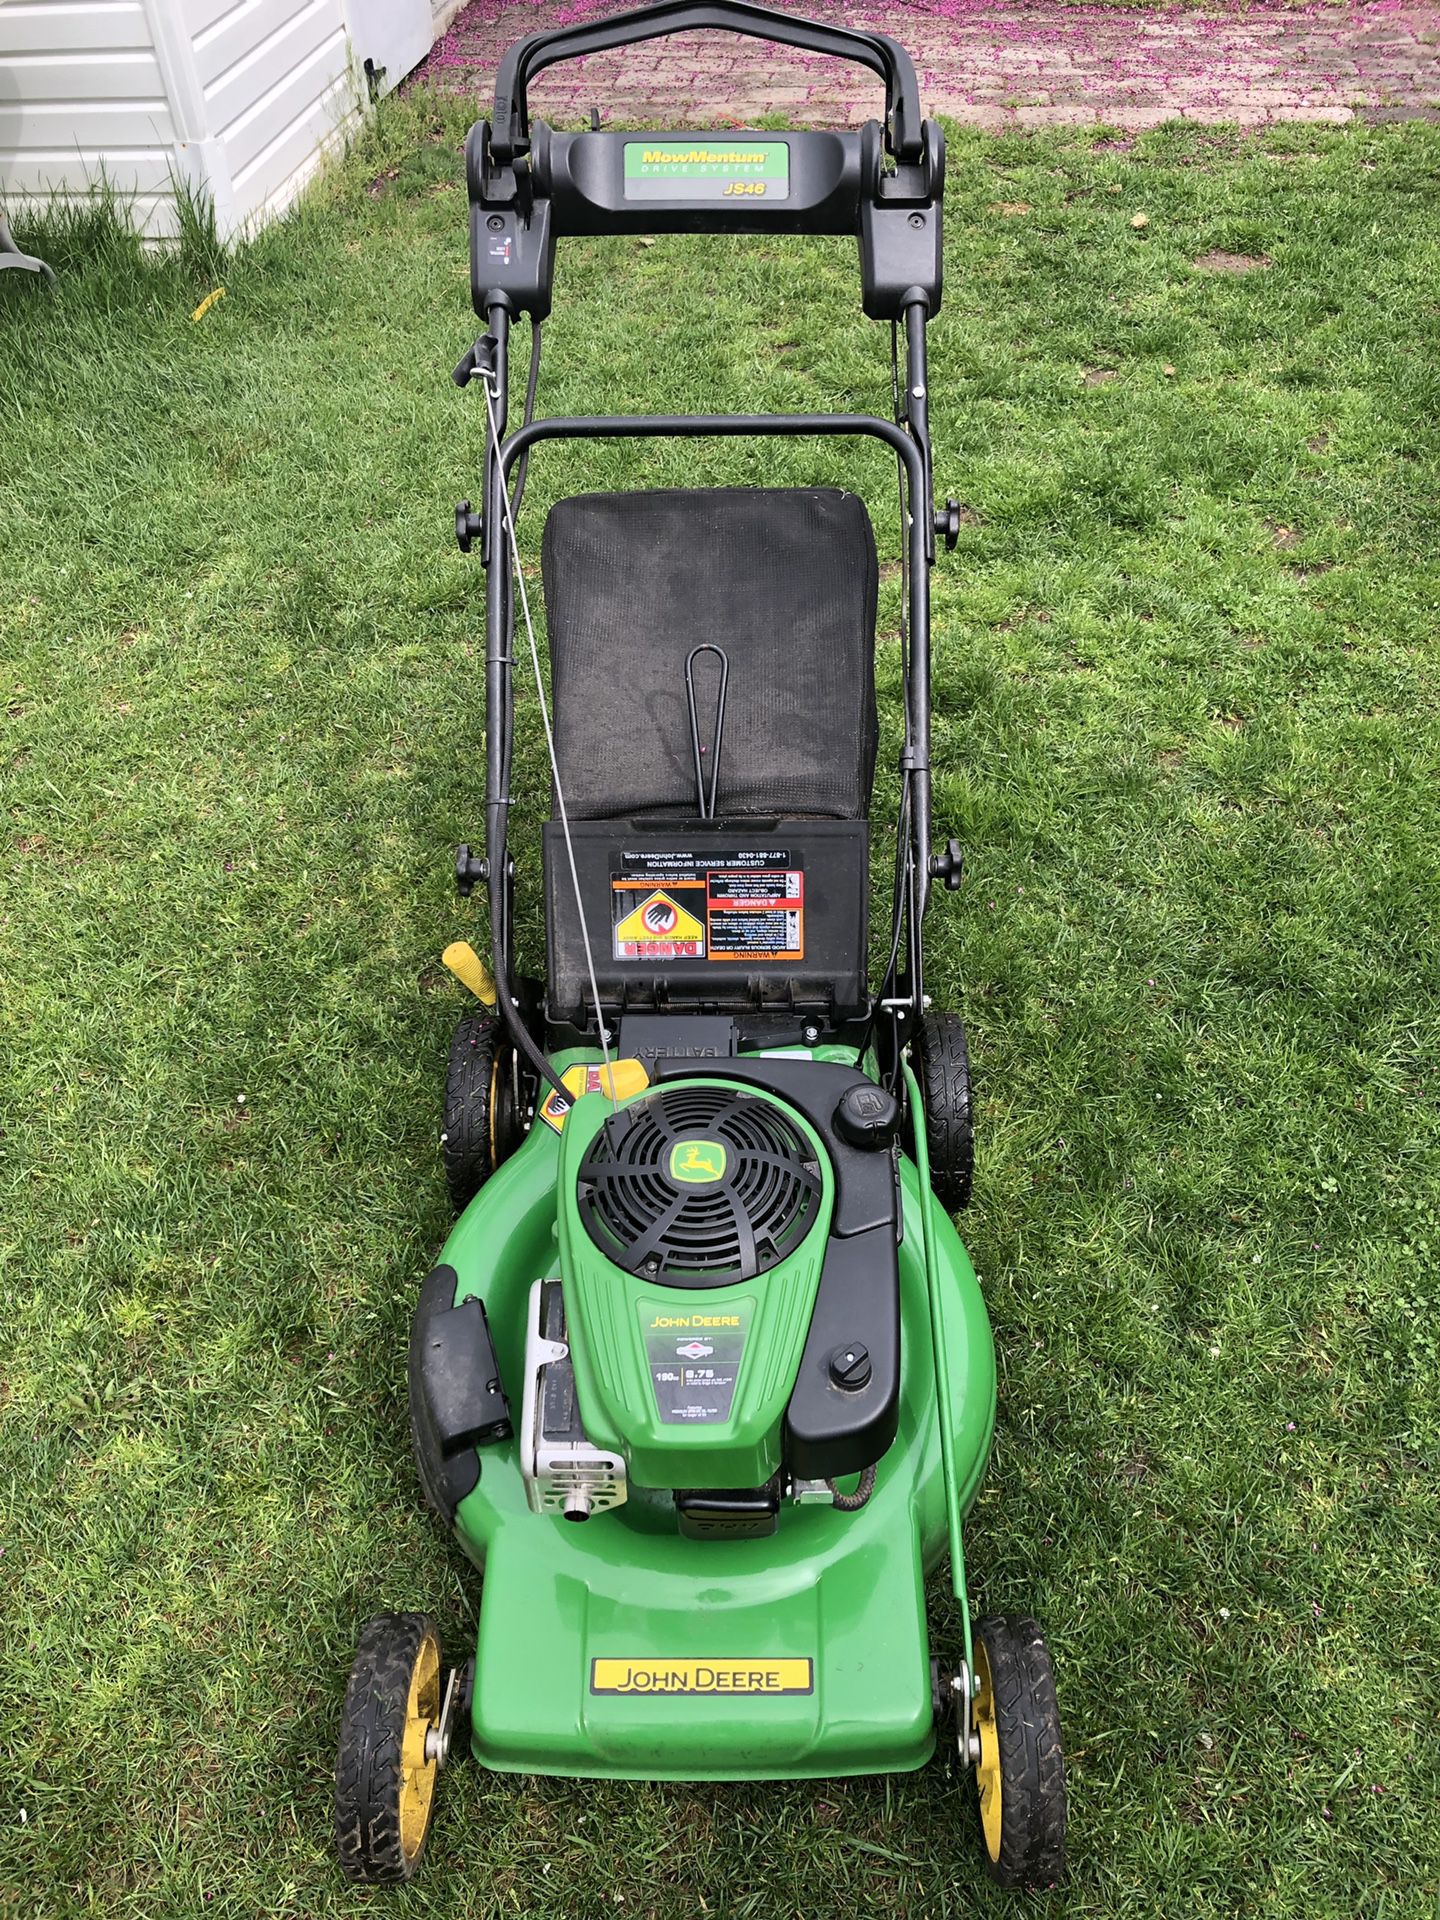 John Deere 22” Lawn Mower